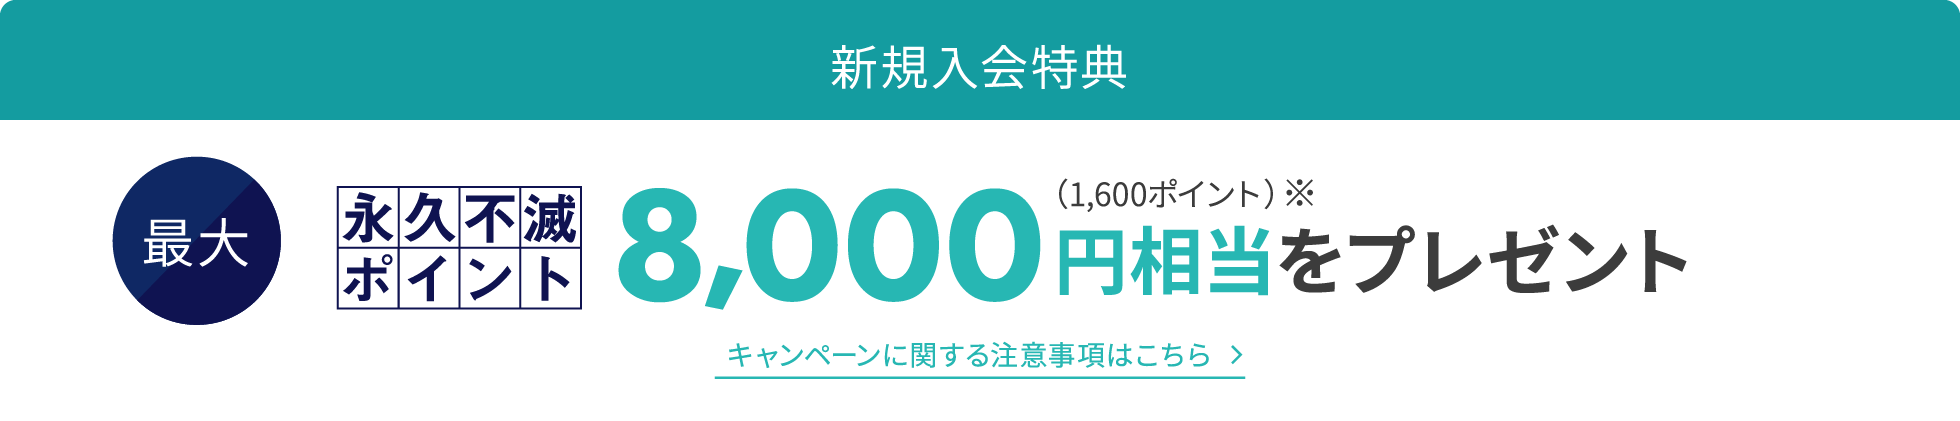 【入会キャンペーン概要】最大8,000円相当のポイントプレゼント